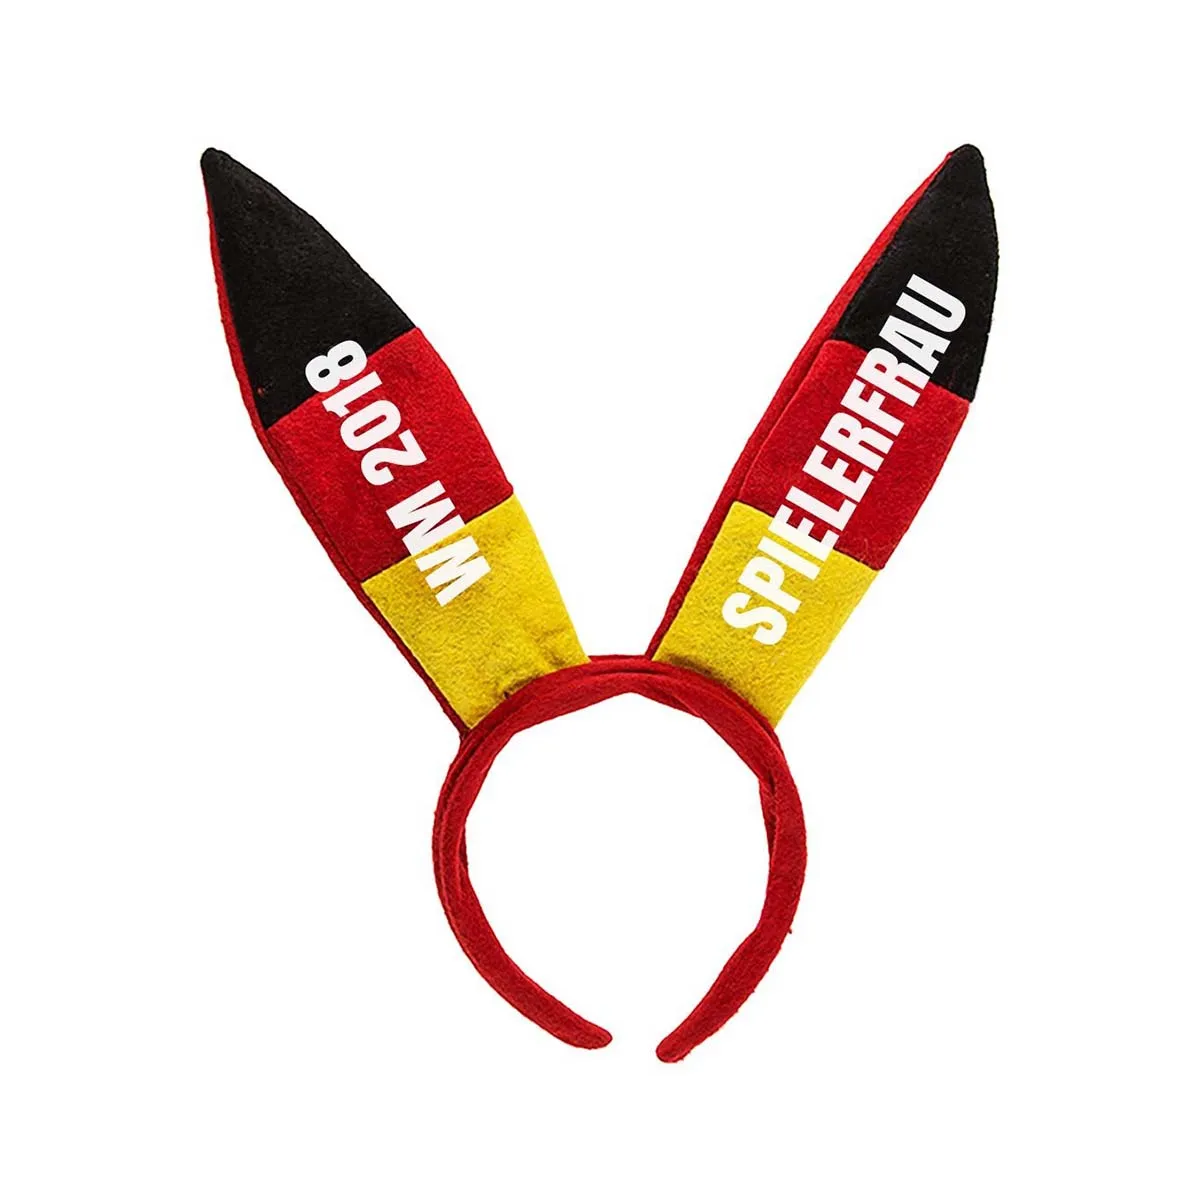 Bunny-Ohren Deutschland mit Personalisierung zum Weltcup